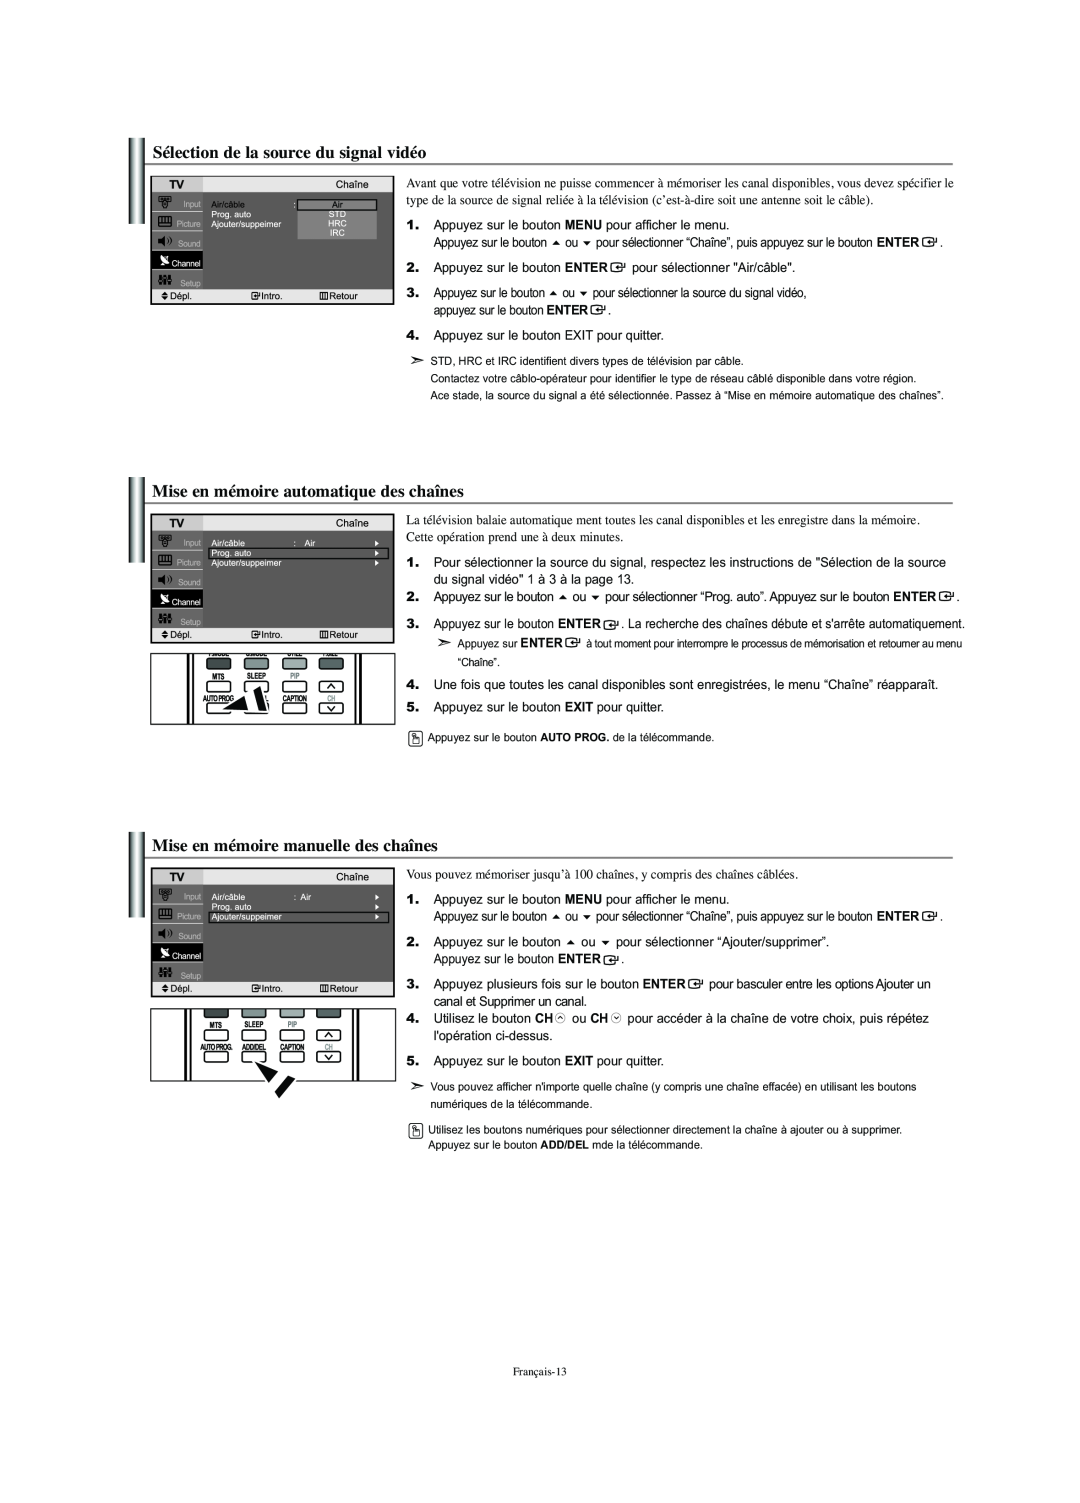 Samsung LN-S2341W manual Sélection de la source du signal vidéo, Mise en mémoire automatique des chaînes 